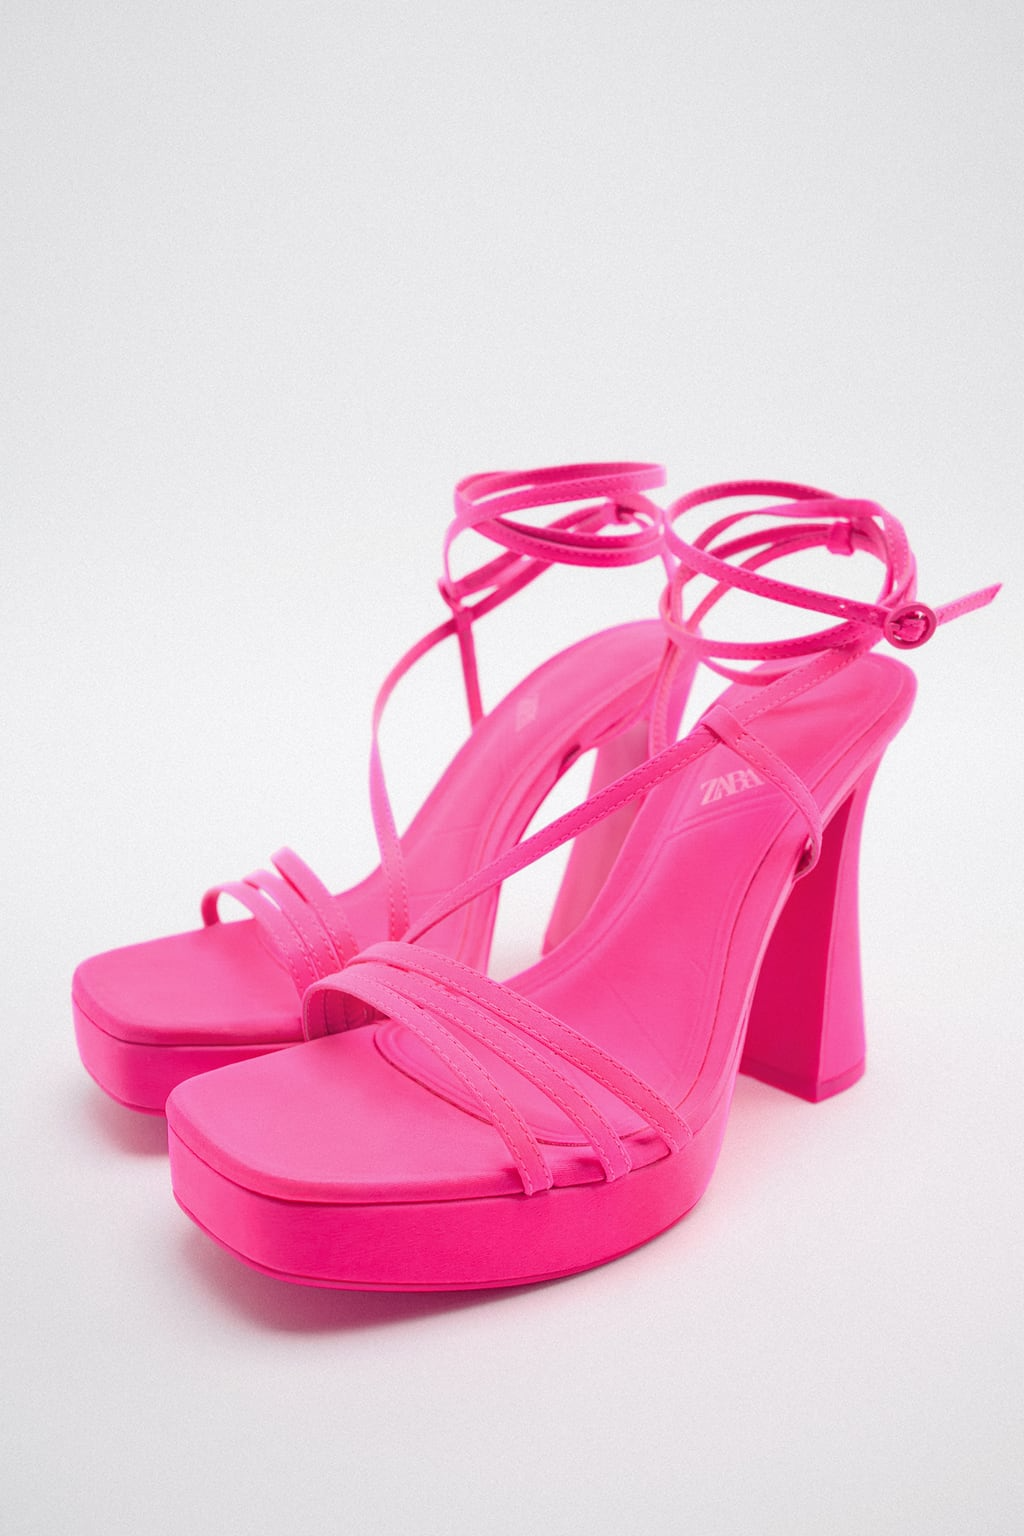 ZARA Strappy Platform Heel Sandals €19.99, 